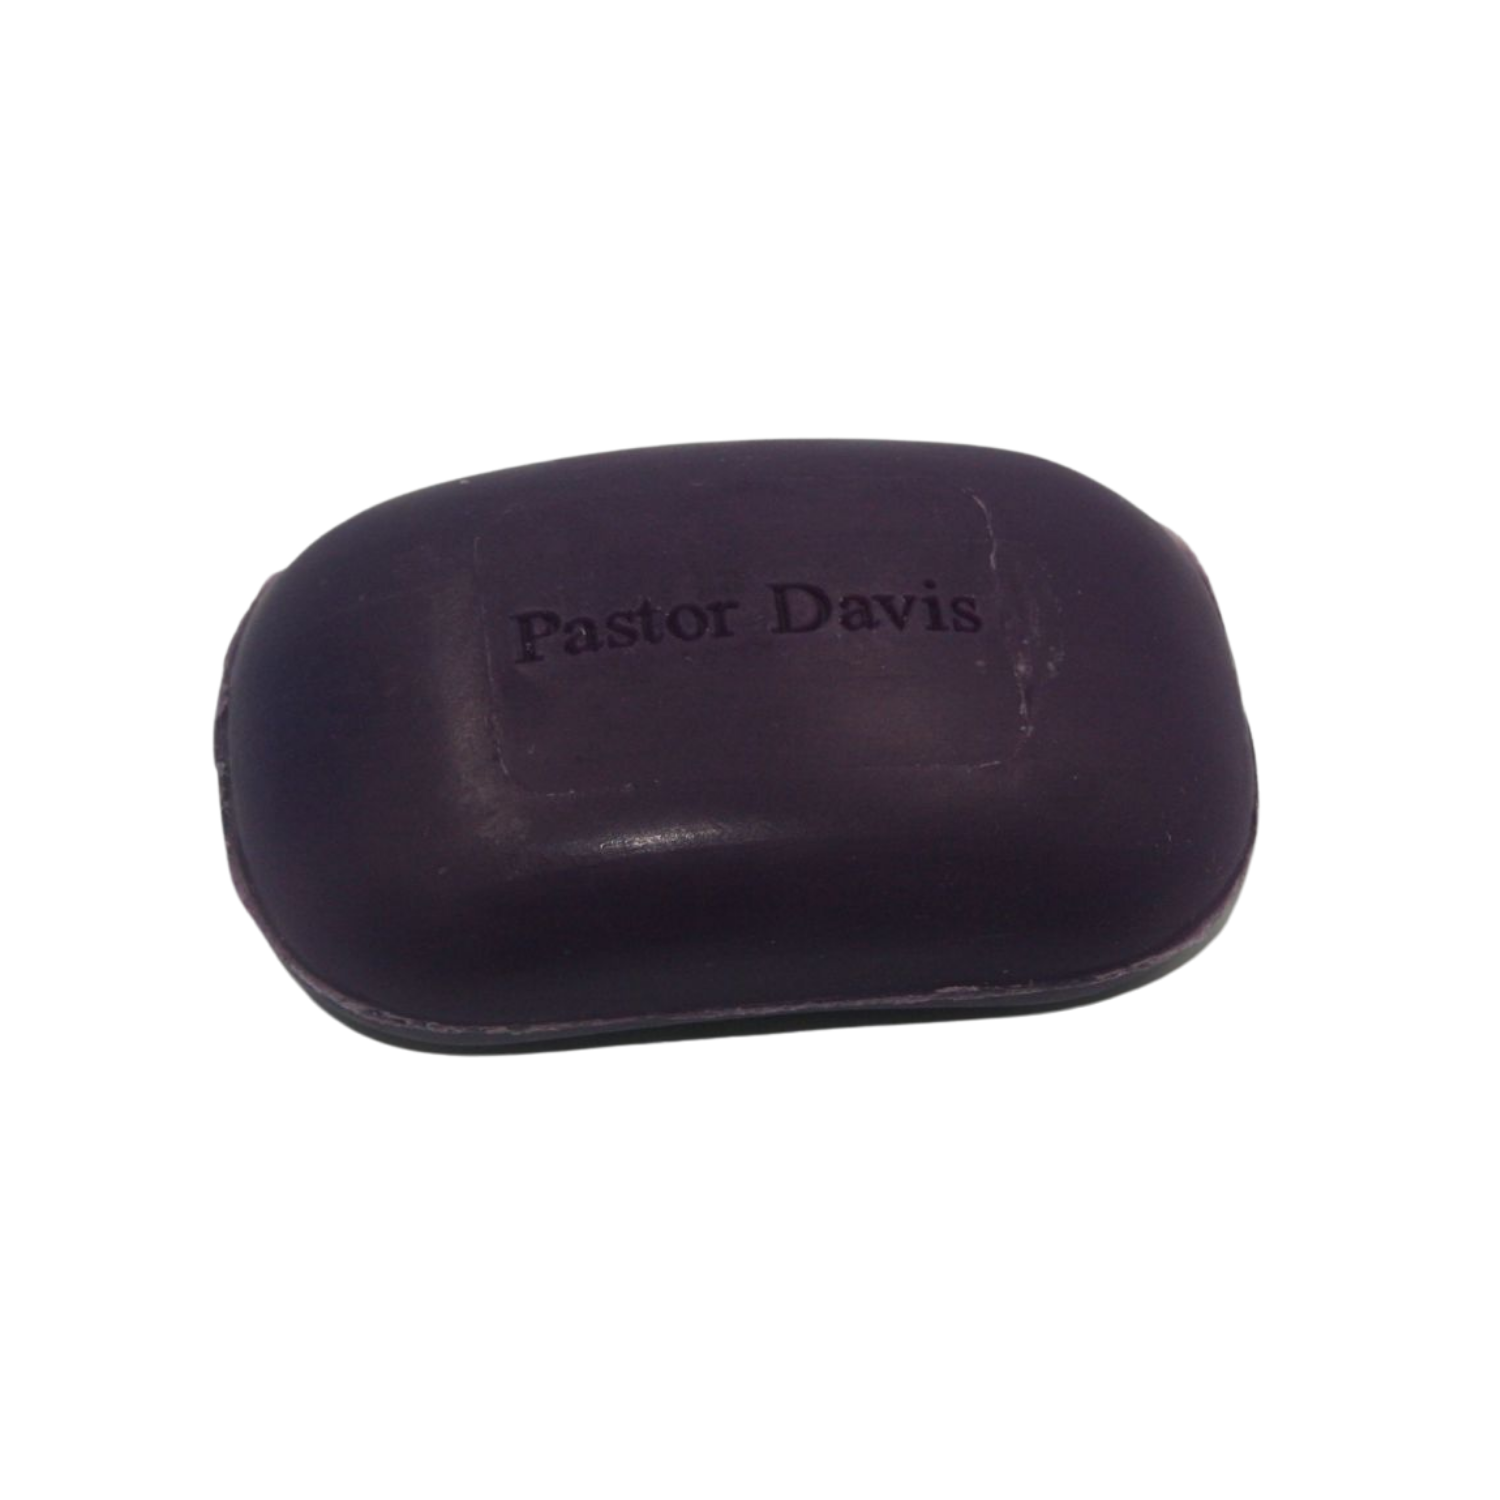 Black Cat Mystic Soap 3 oz